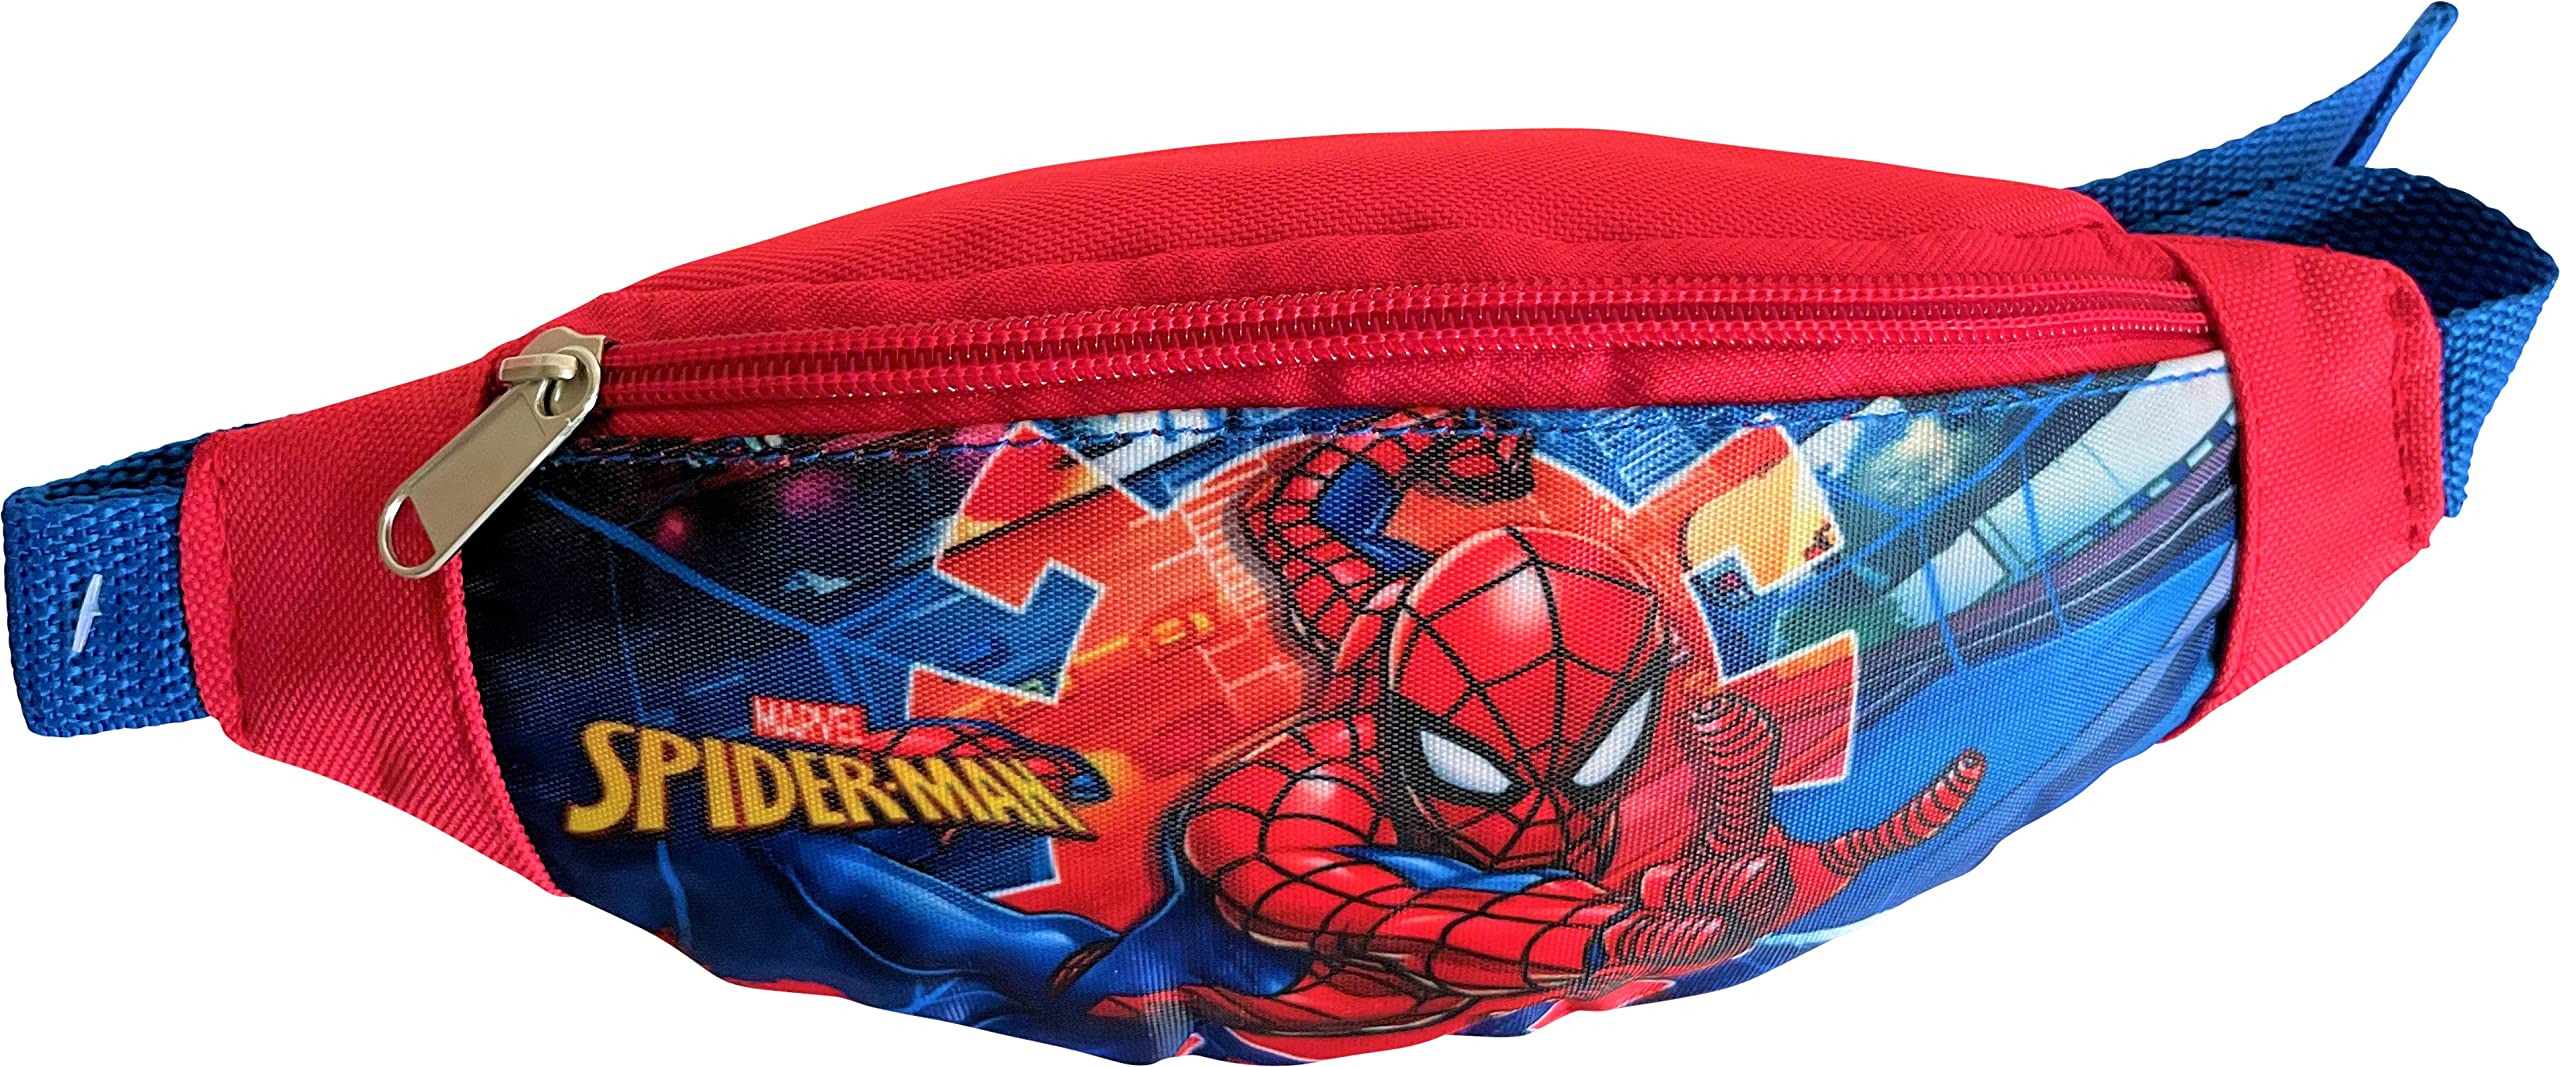 Spider-Man Little Boy Fanny Pack - Kids Phone Pouch Waist Bag